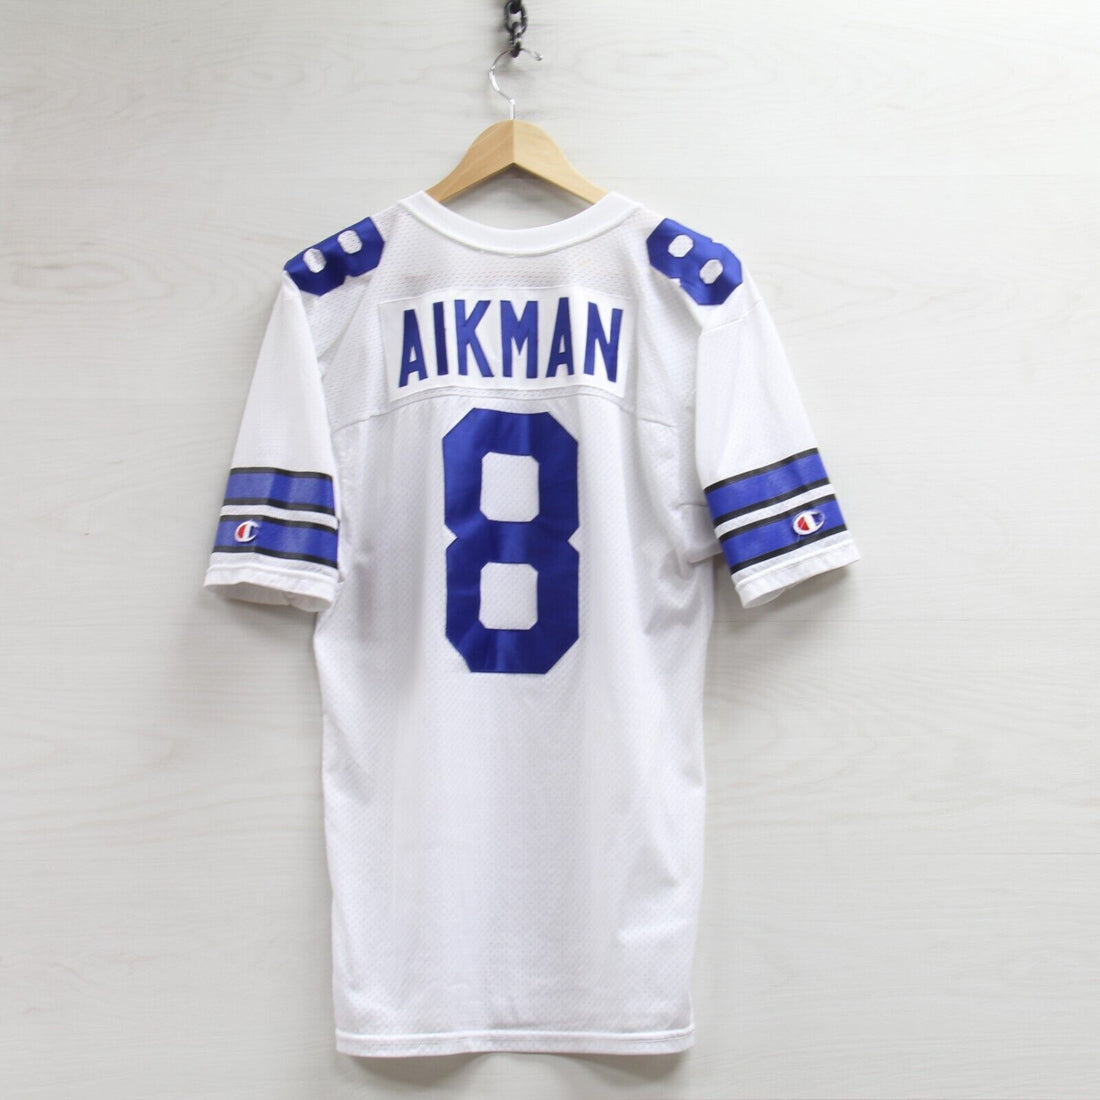 Vintage Dallas Cowboys Troy Aikman Champion Authentic Jersey Size 40 NFL